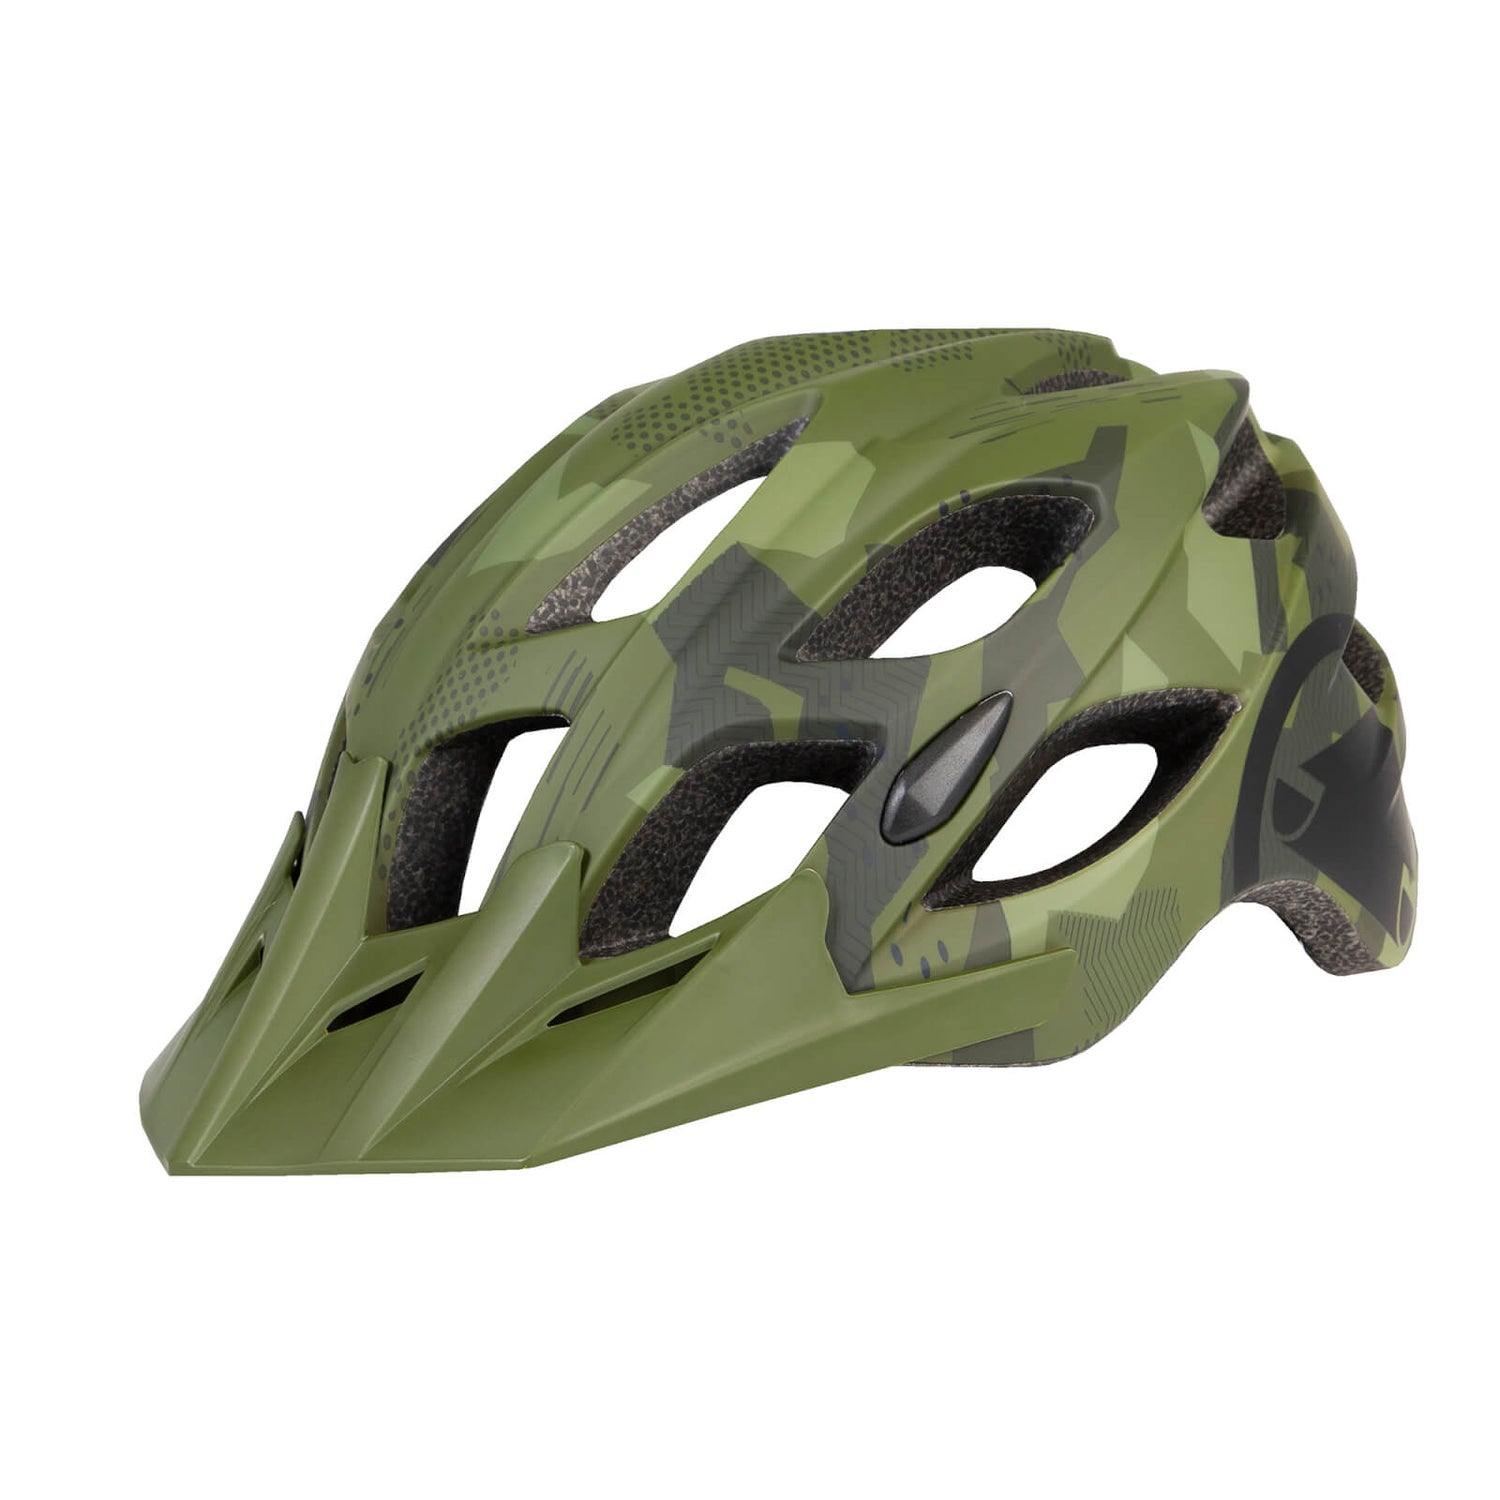 Men's Hummvee Helmet - Olive Green - S-M